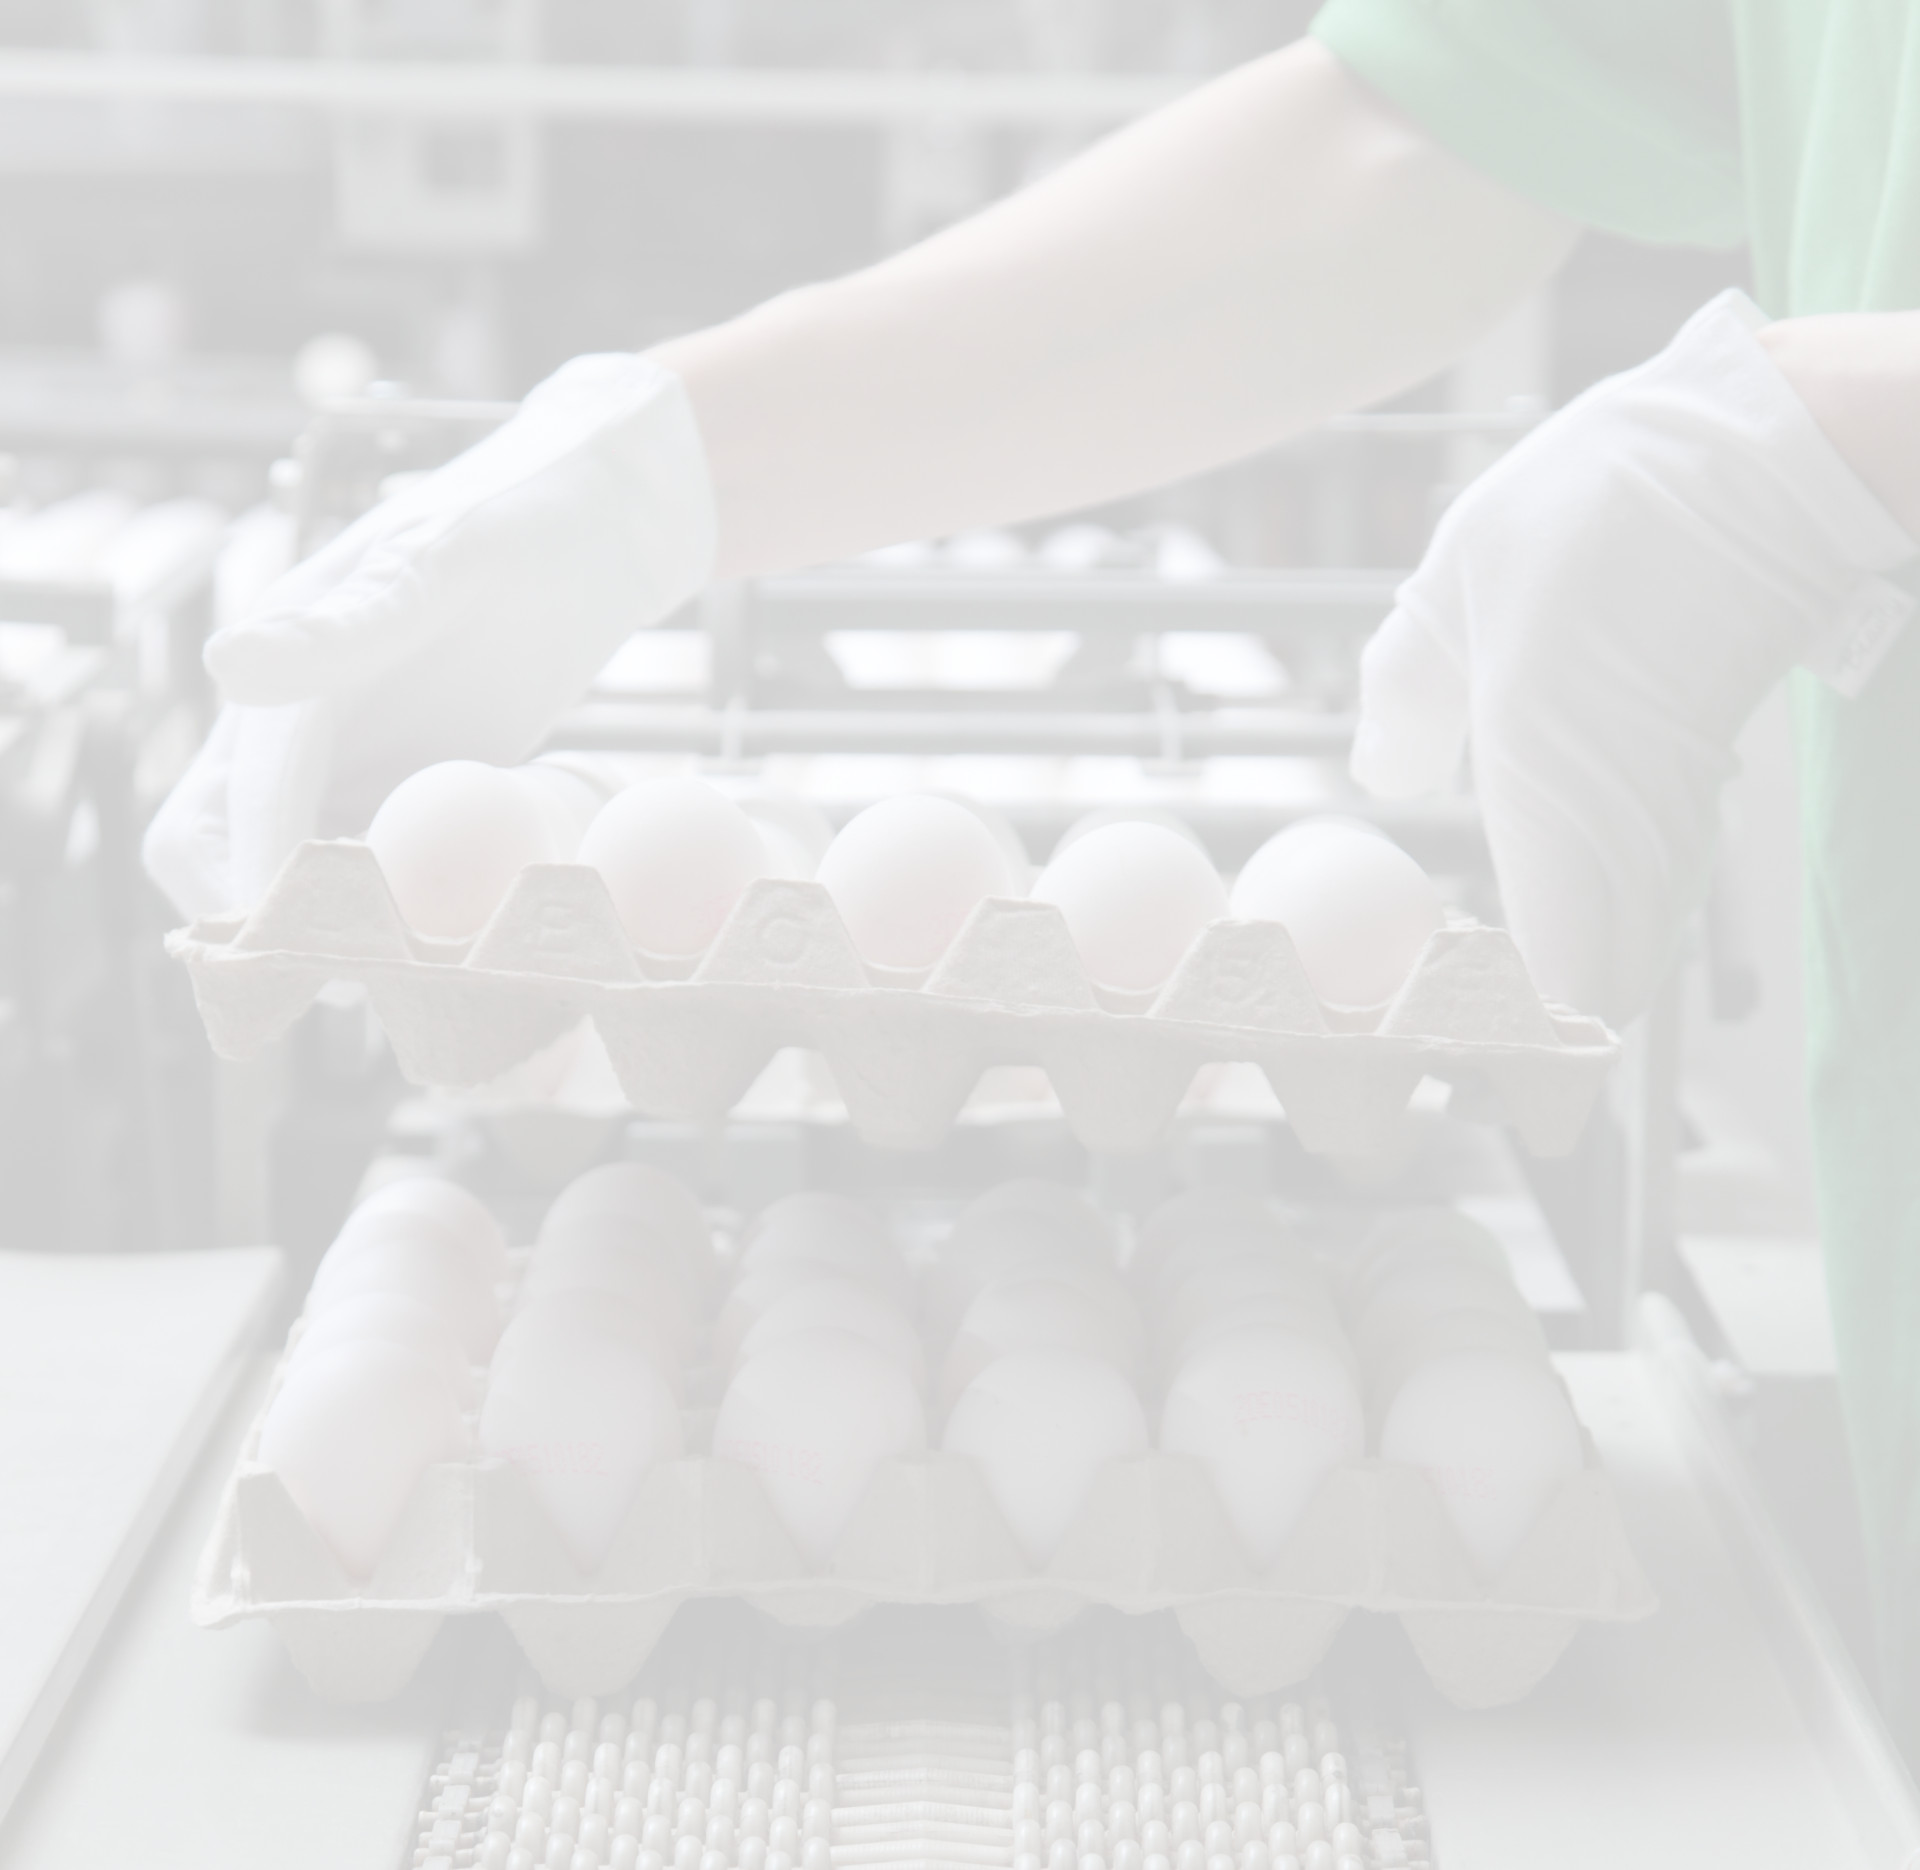 Fotohintergrund: Eier werden in der Sortierung gestapelt